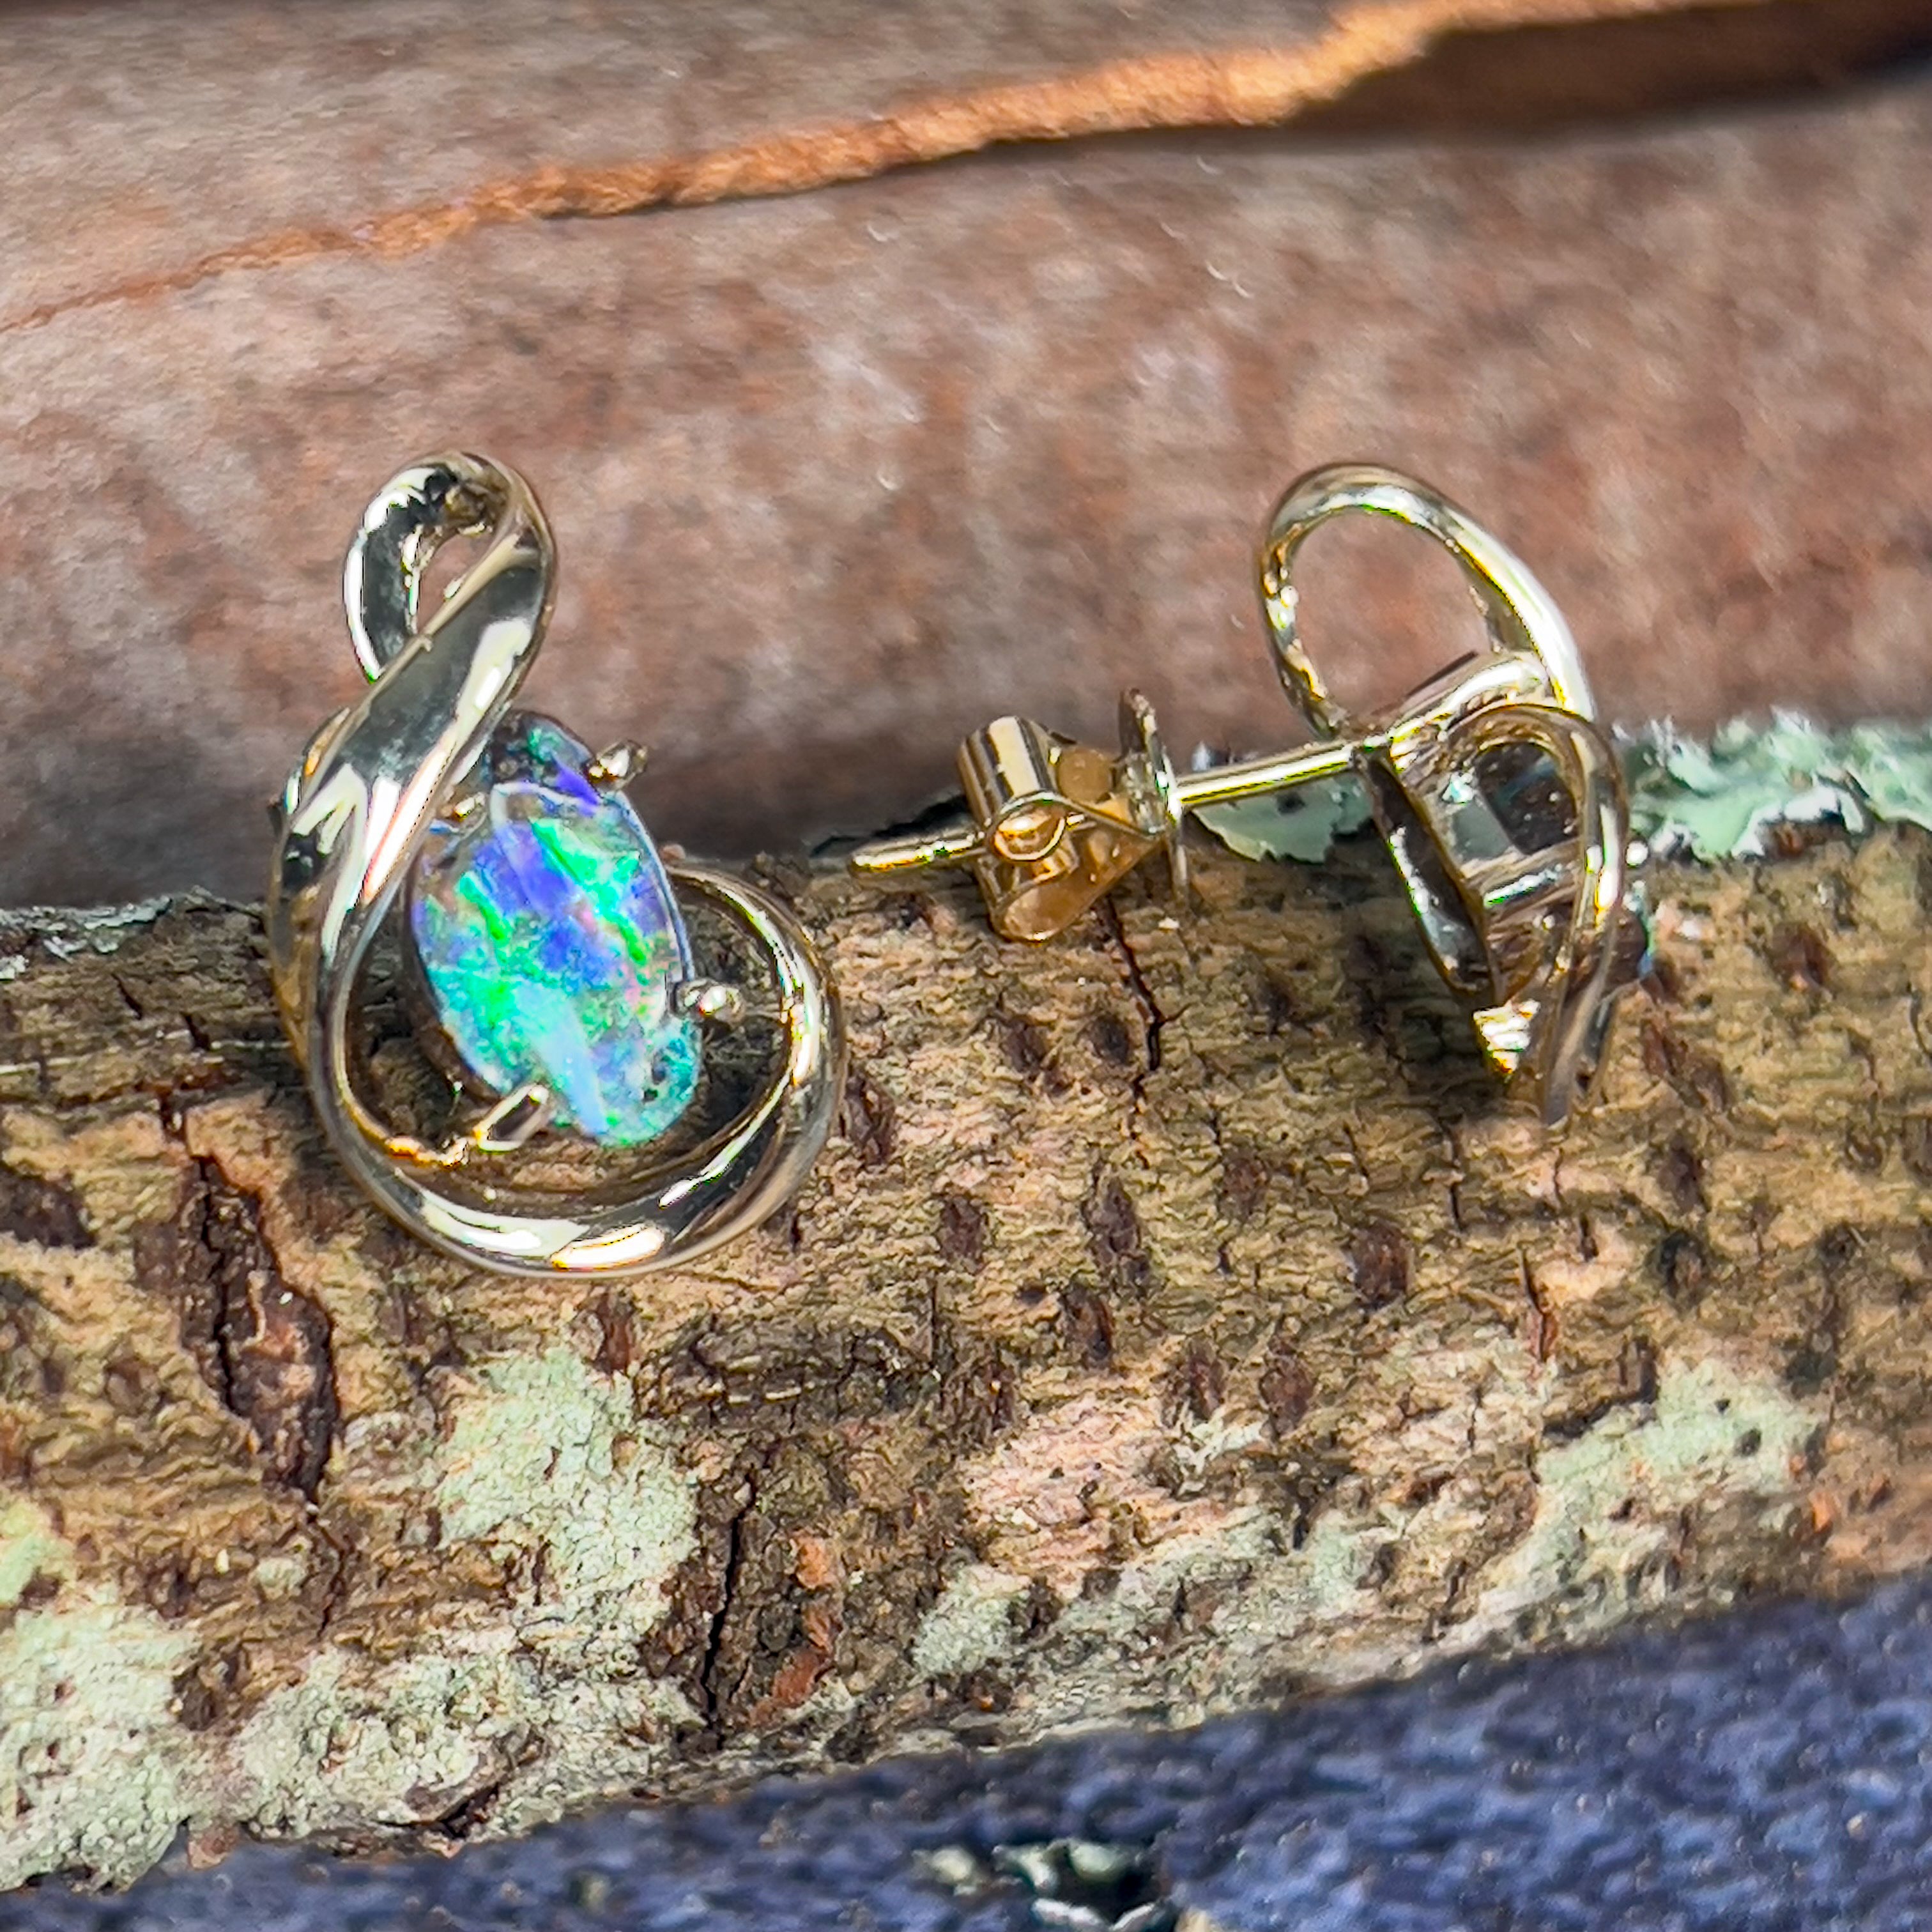 9kt Yellow Gold Boulder Opal 2.07ct earrings - Masterpiece Jewellery Opal & Gems Sydney Australia | Online Shop